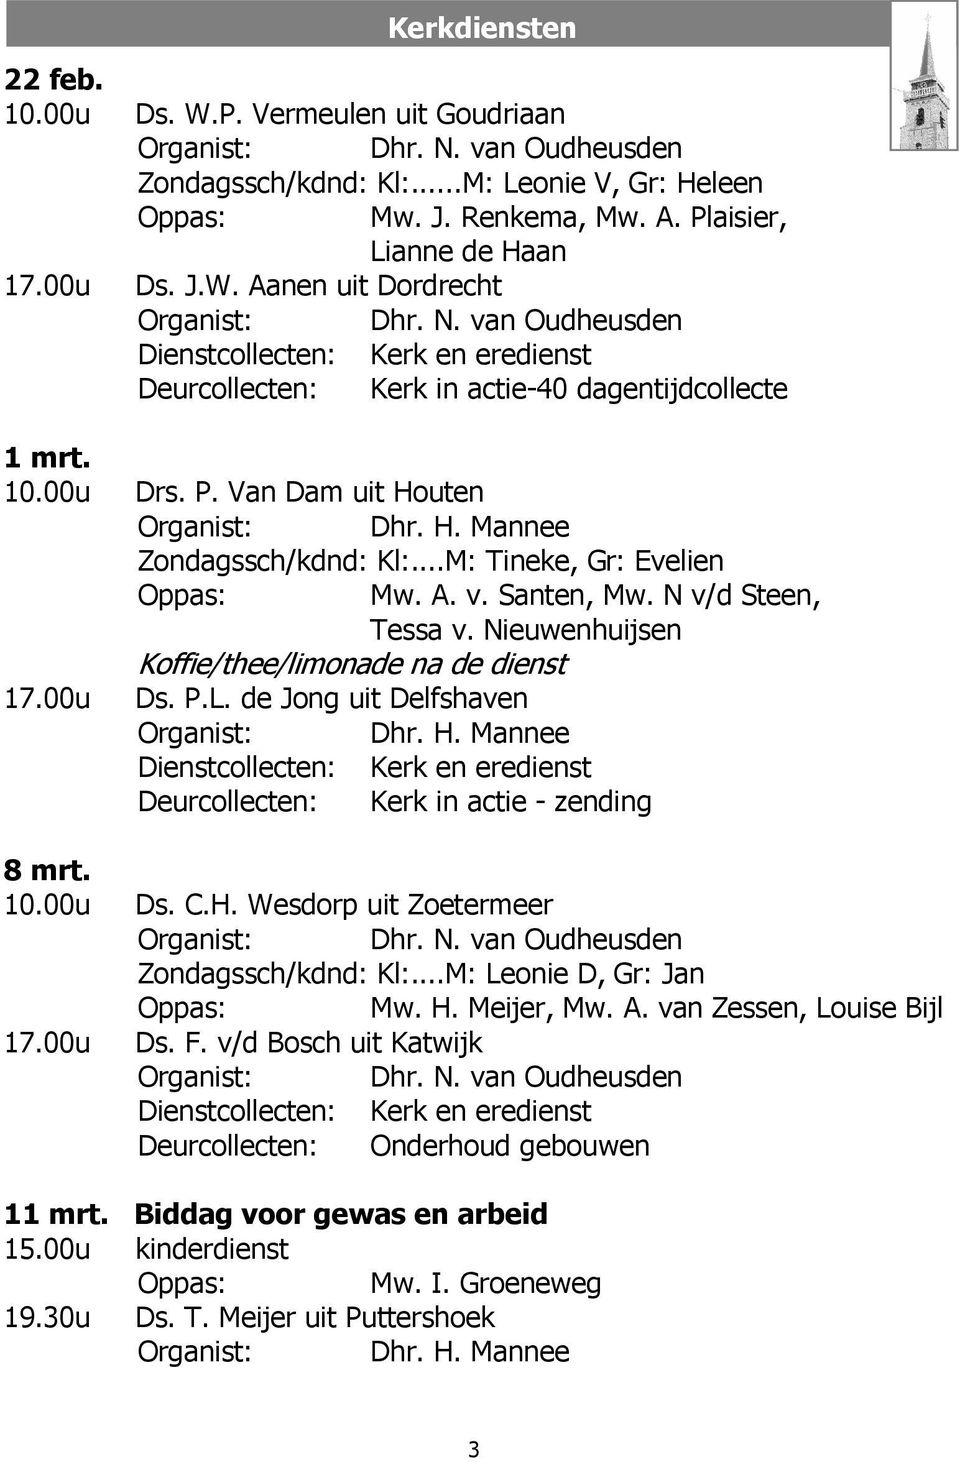 Van Dam uit Houten Organist: Dhr. H. Mannee Zondagssch/kdnd: Kl:...M: Tineke, Gr: Evelien Oppas: Mw. A. v. Santen, Mw. N v/d Steen, Tessa v. Nieuwenhuijsen Koffie/thee/limonade na de dienst 17.00u Ds.